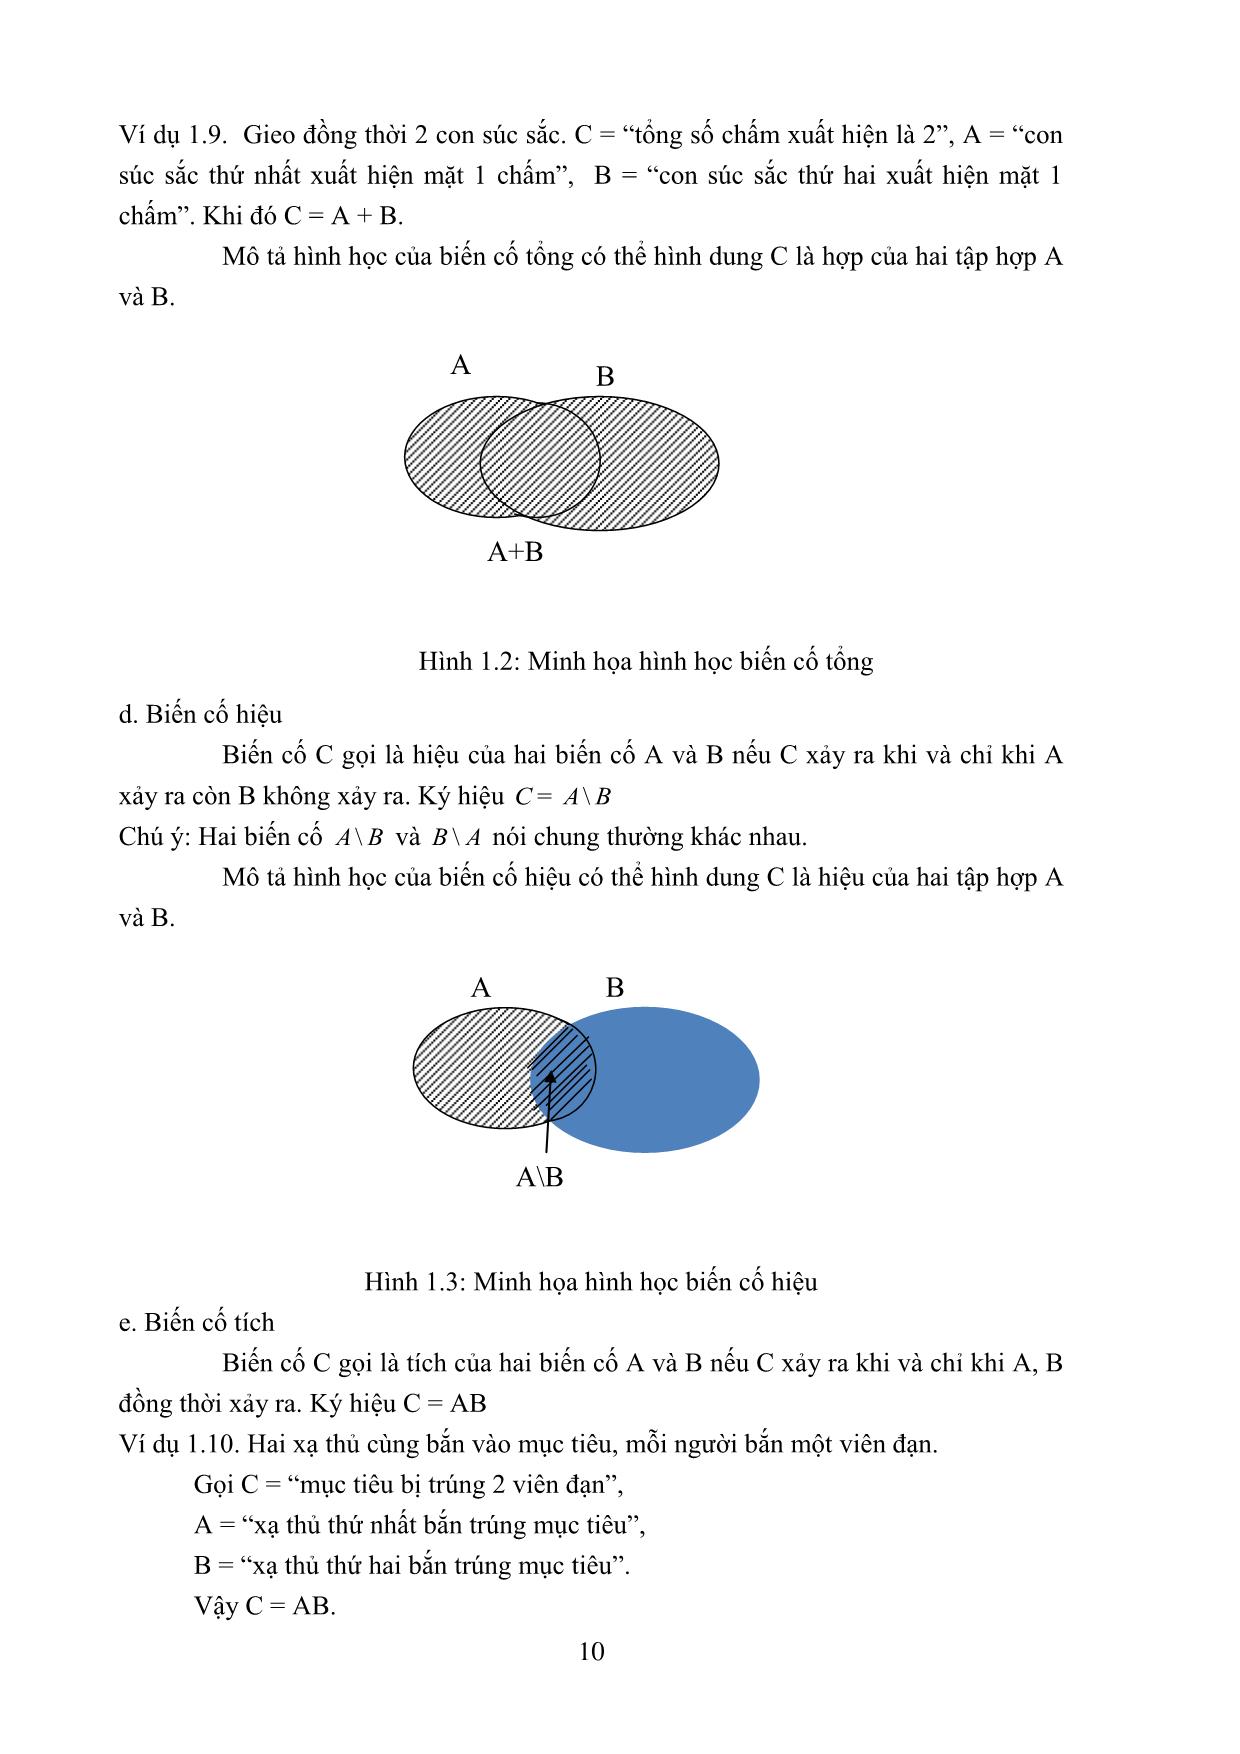 Giáo trình Lý thuyết xác suất và thống kê toán học trang 10